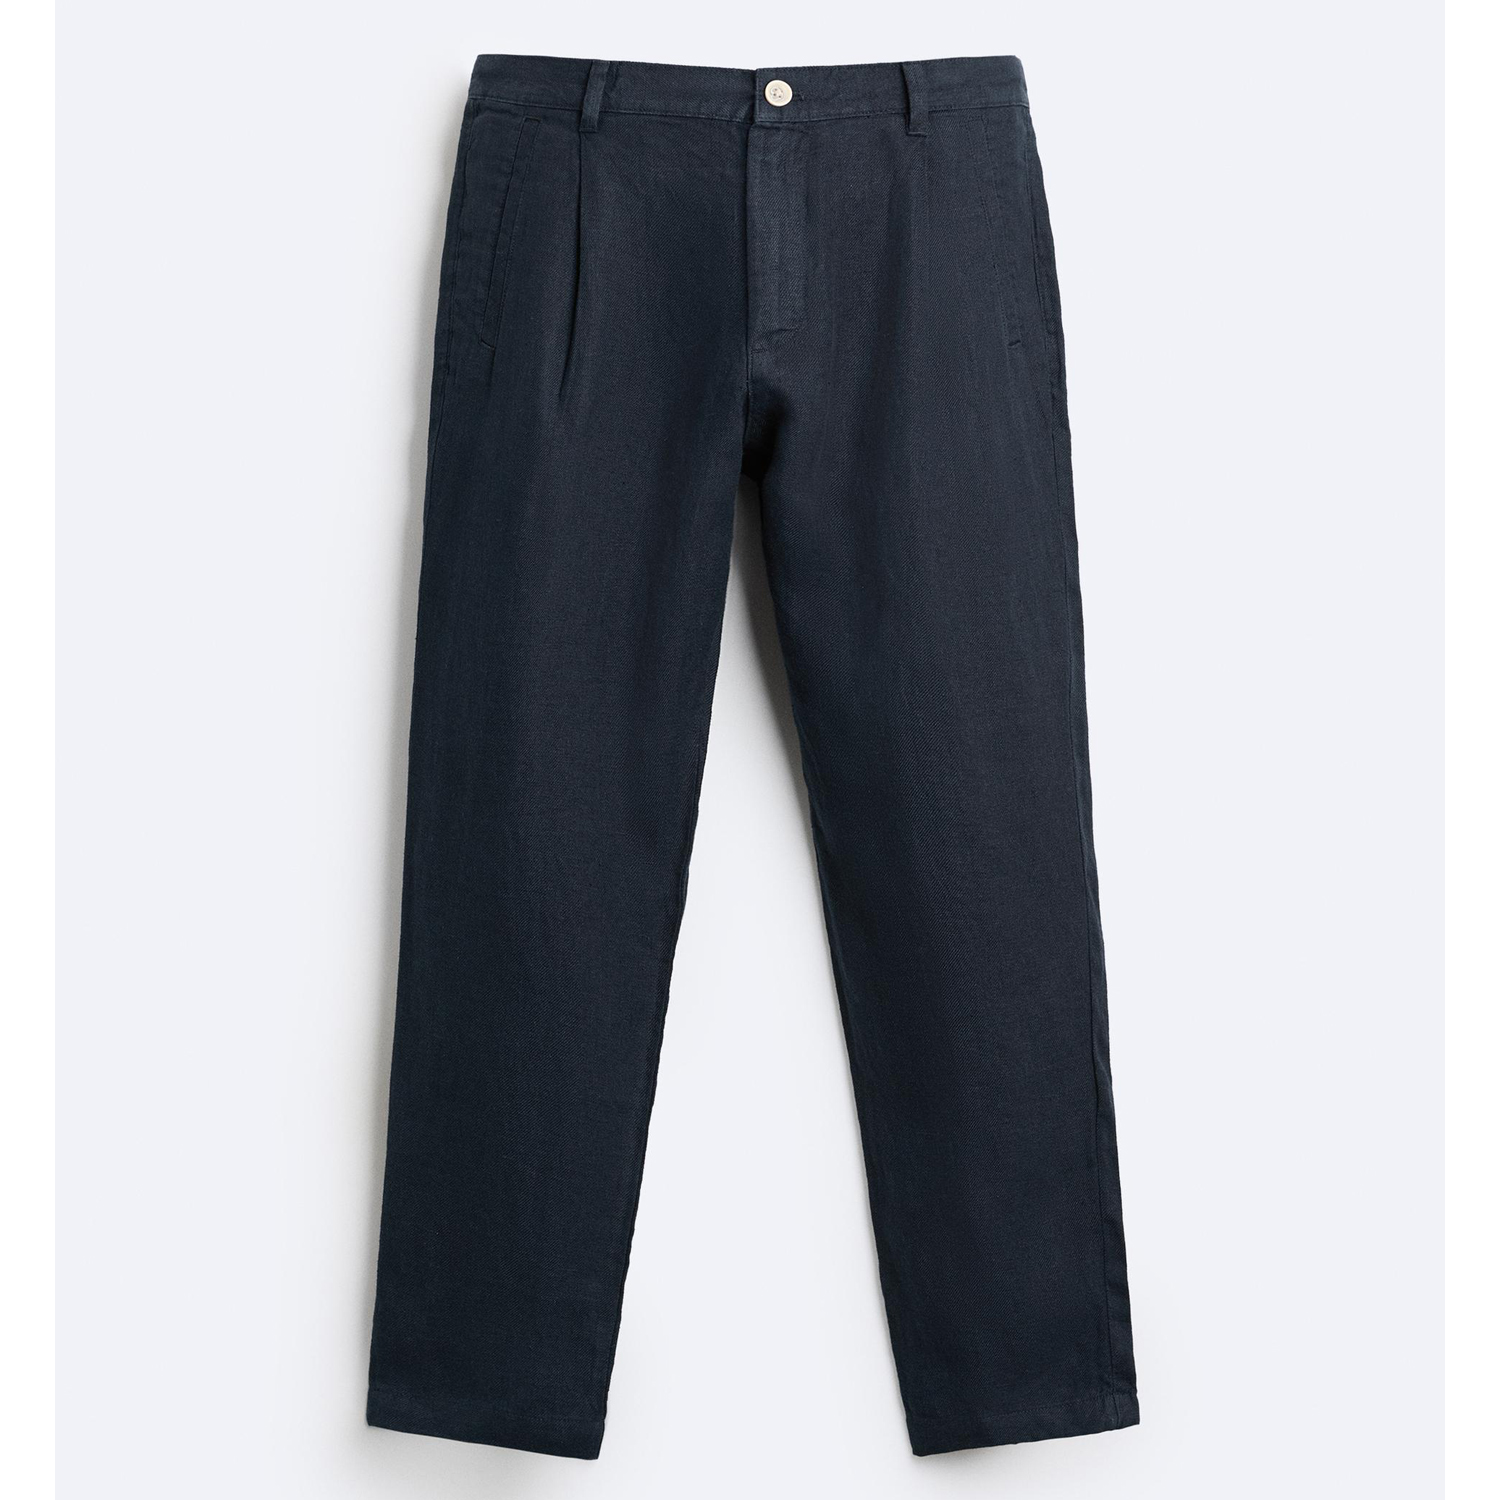 Брюки Zara 100% Linen, темно-синий брюки свободного кроя со складками